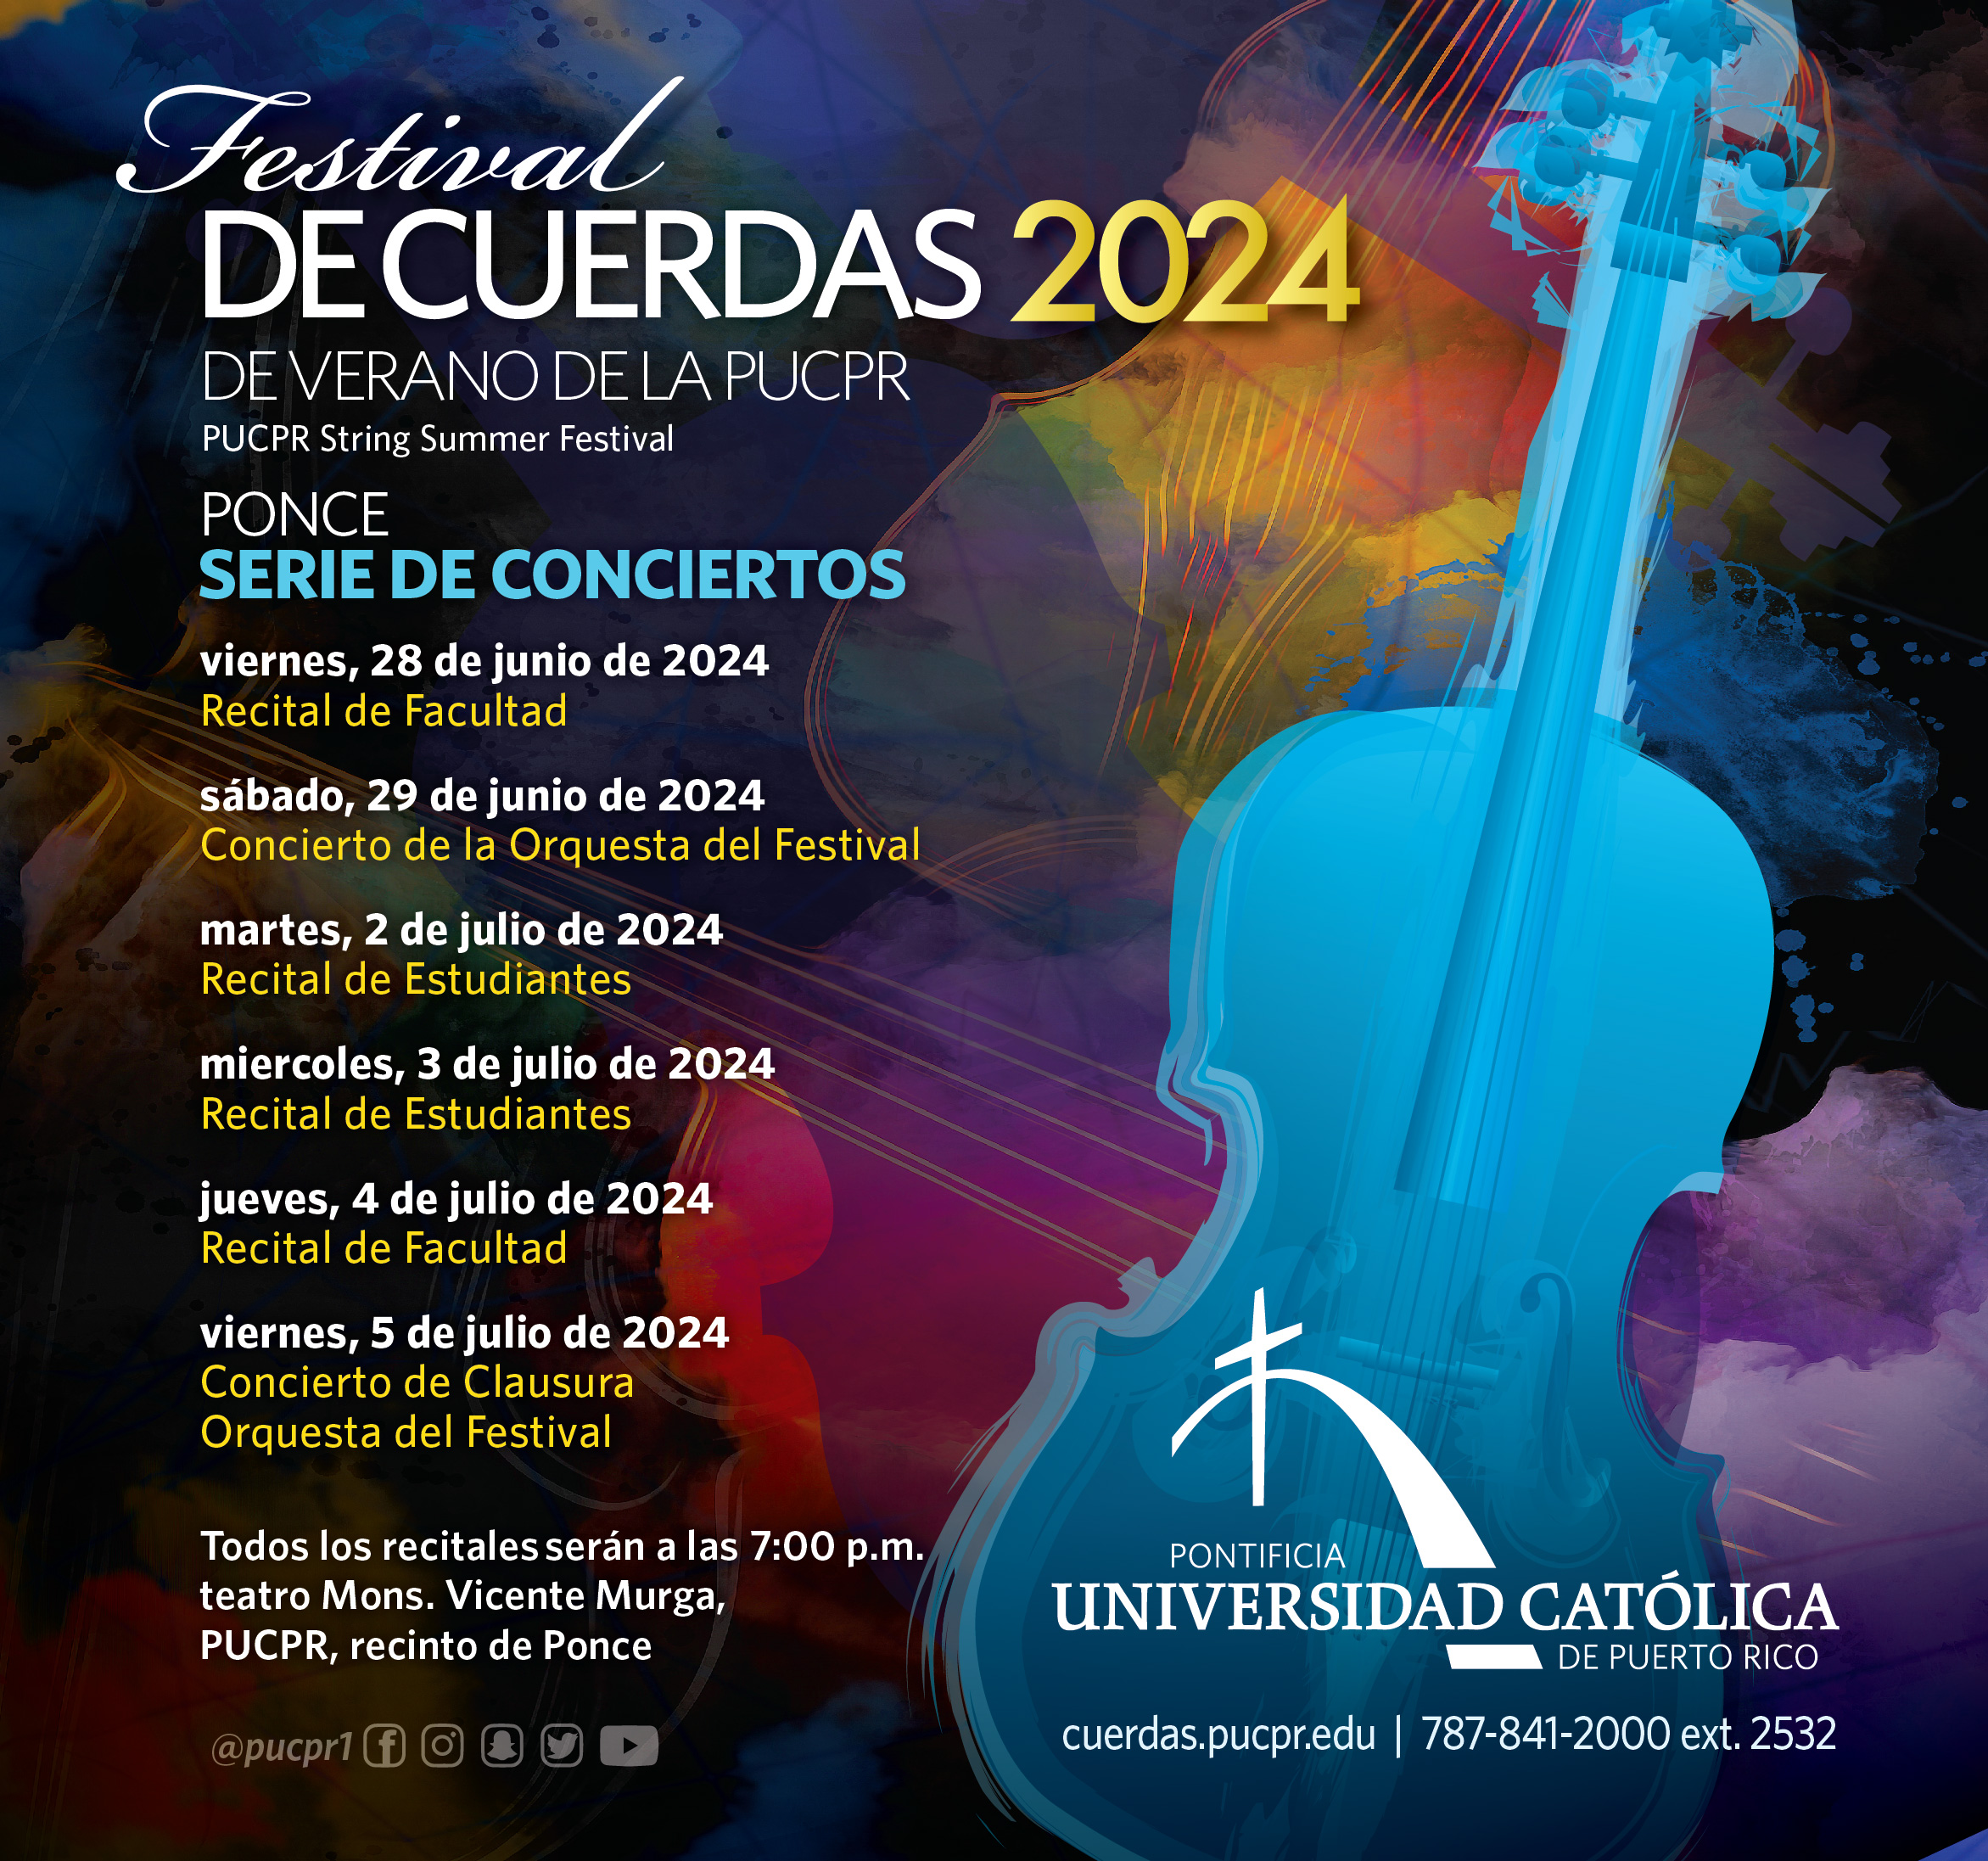 Festival de Cuerdas de Verano 2024 -serie de conciertos